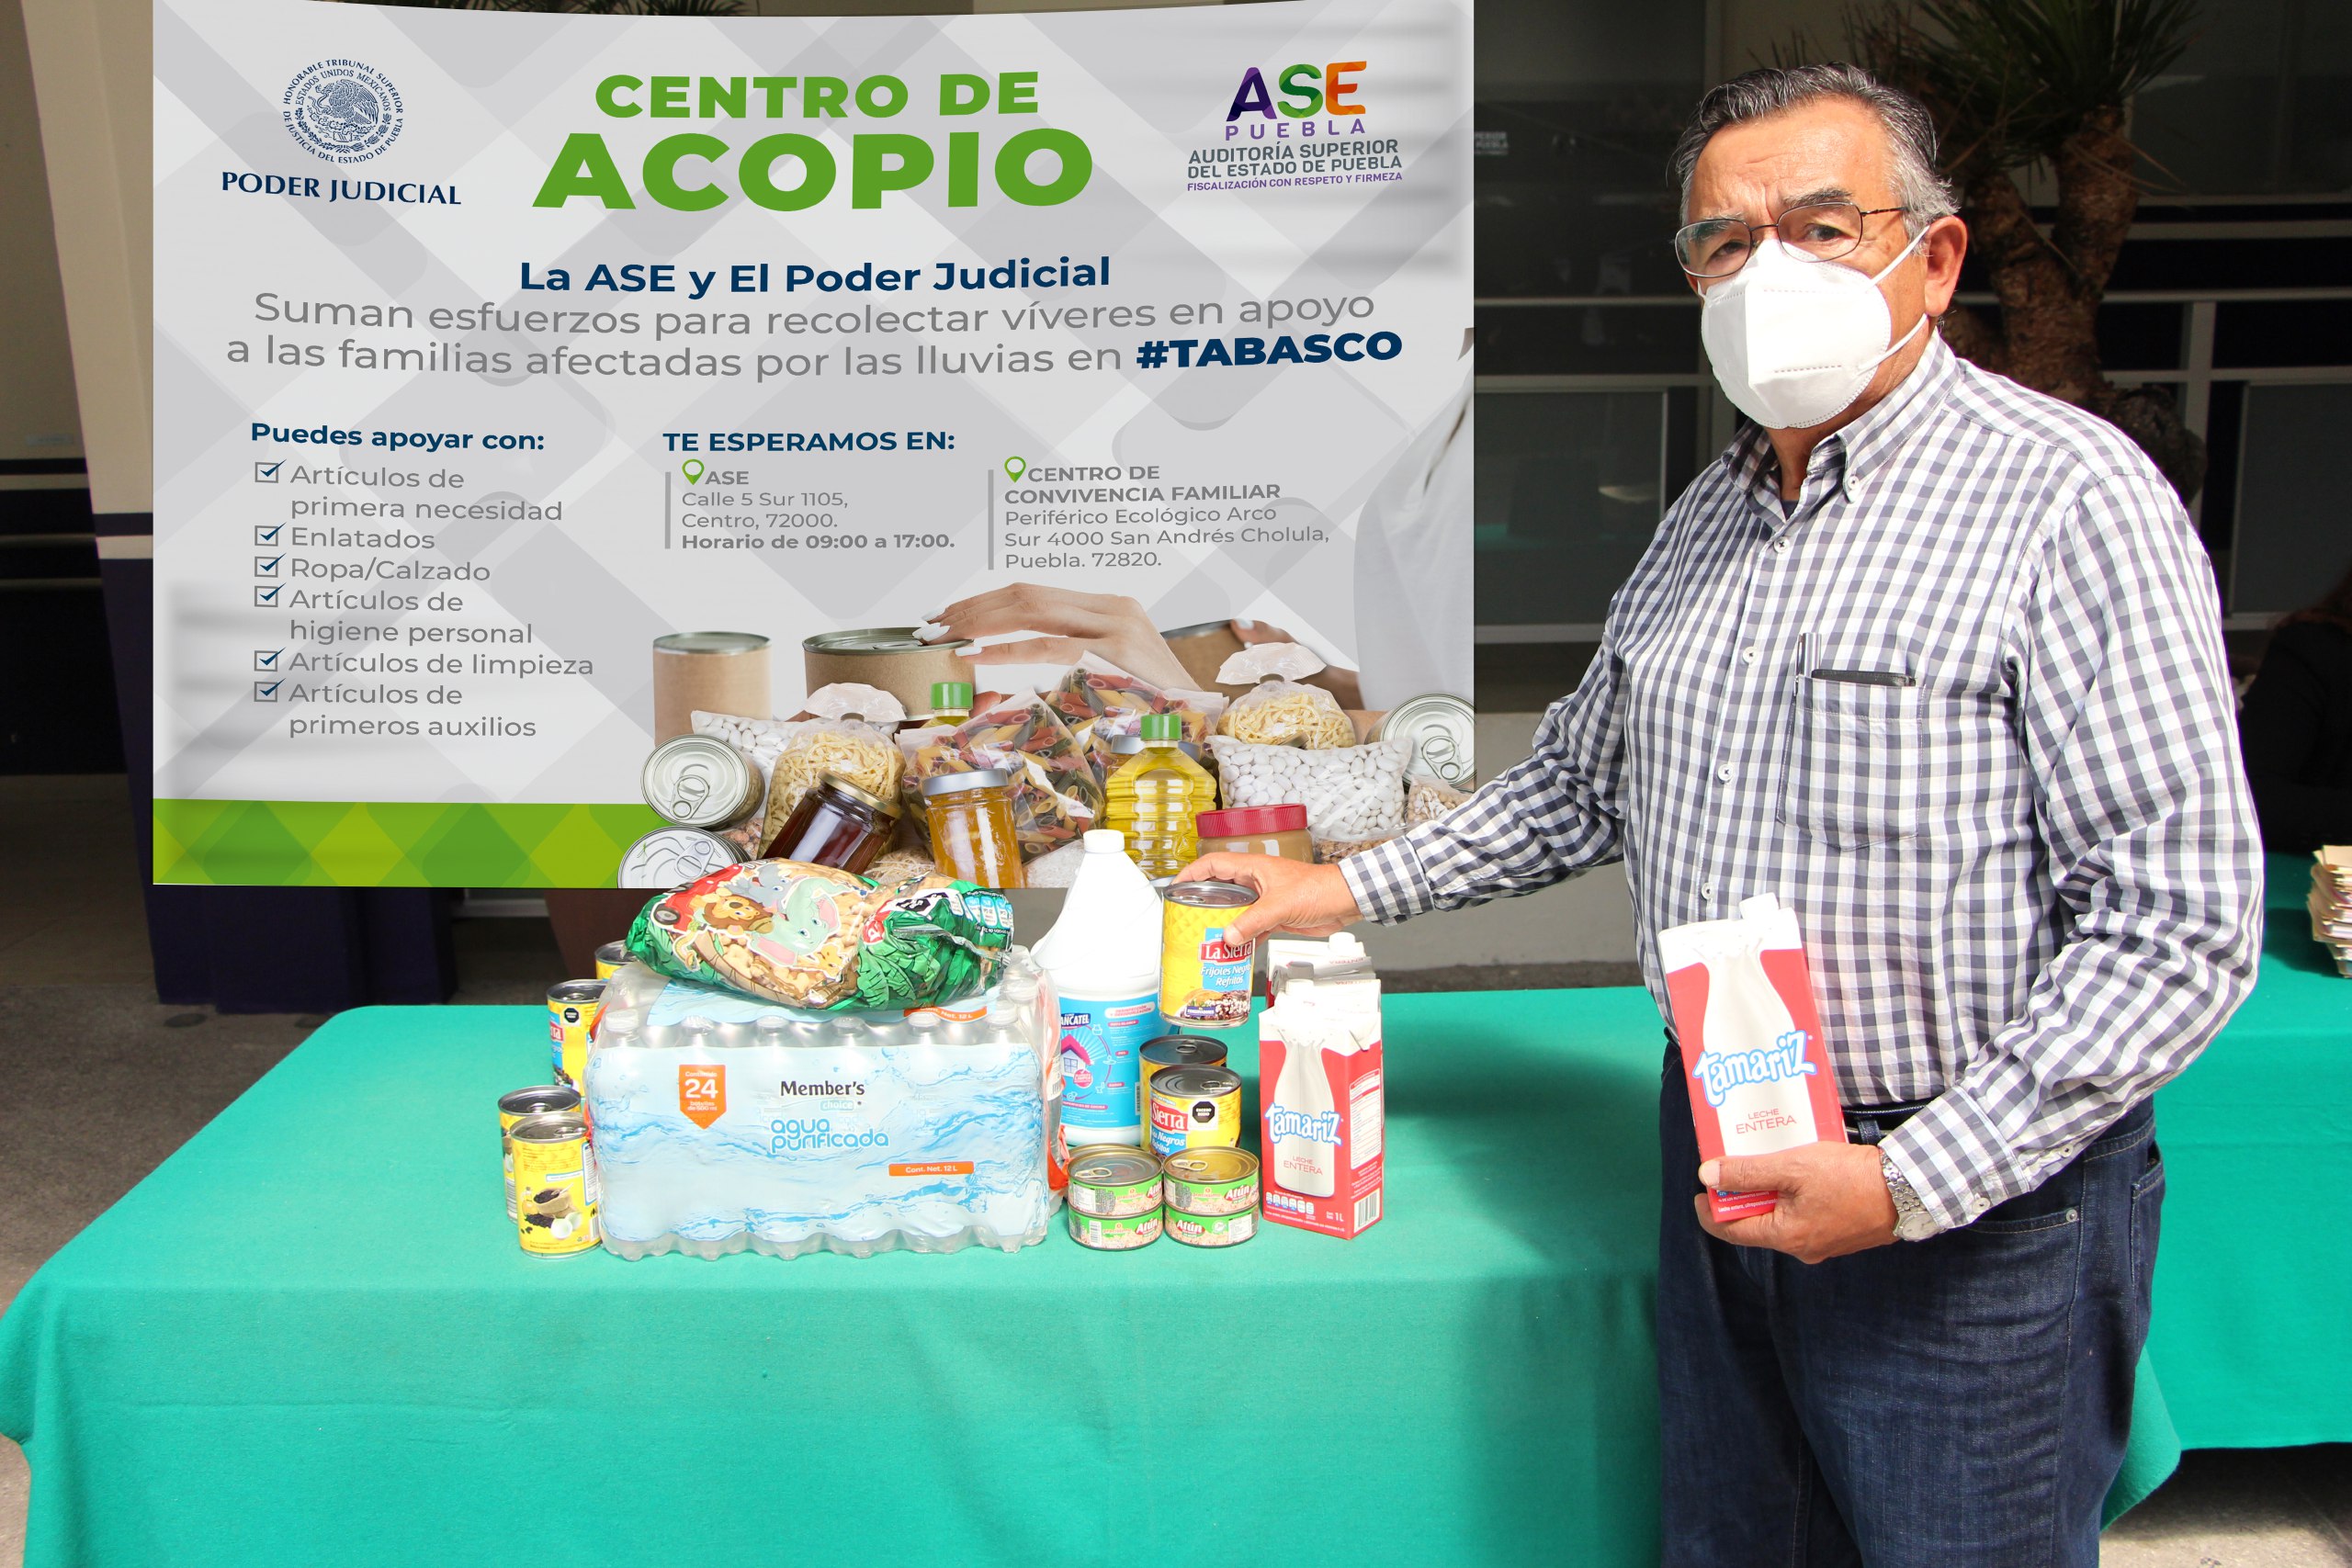 La ASE y el poder judicial del estado de Puebla suman esfuerzos para recolectar víveres en apoyo a las familias afectadas por lluvias en Tabasco.